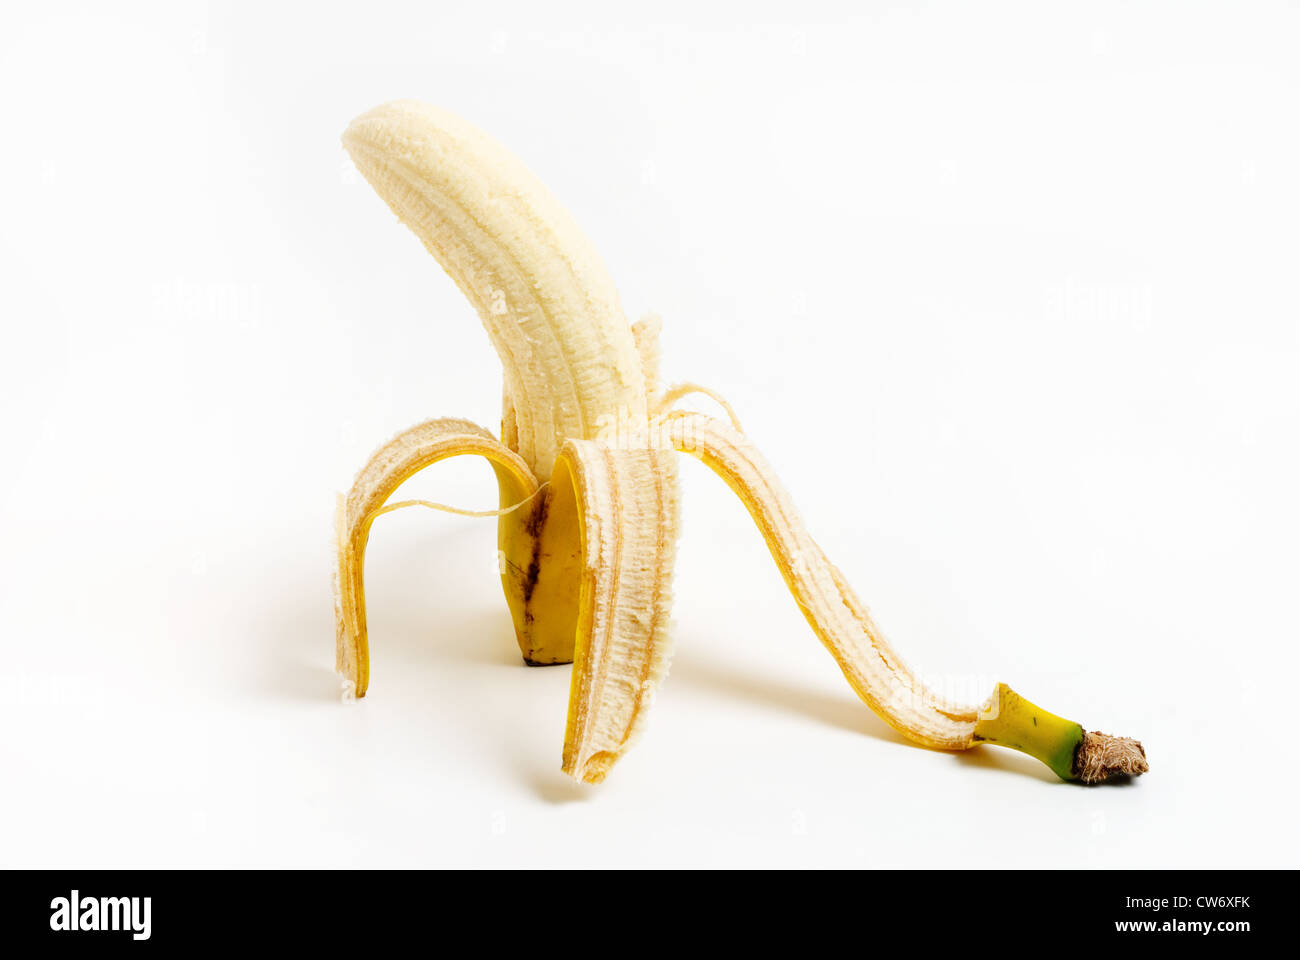 Peeled ripe banana fruit on white background Stock Photo